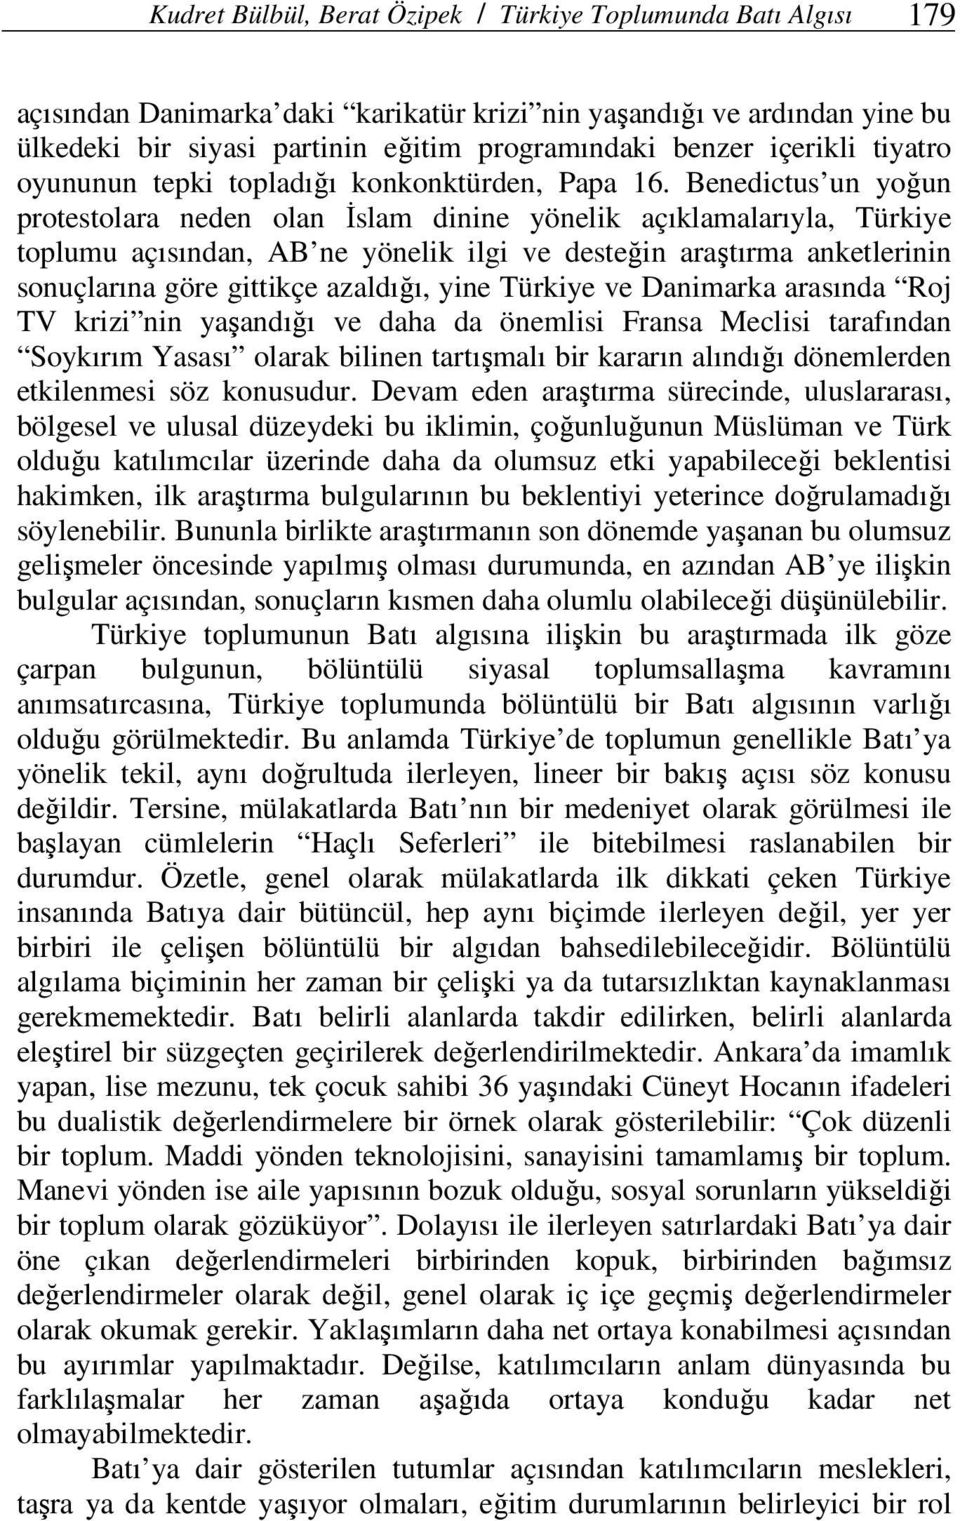 Benedictus un yoğun protestolara neden olan İslam dinine yönelik açıklamalarıyla, Türkiye toplumu açısından, AB ne yönelik ilgi ve desteğin araştırma anketlerinin sonuçlarına göre gittikçe azaldığı,